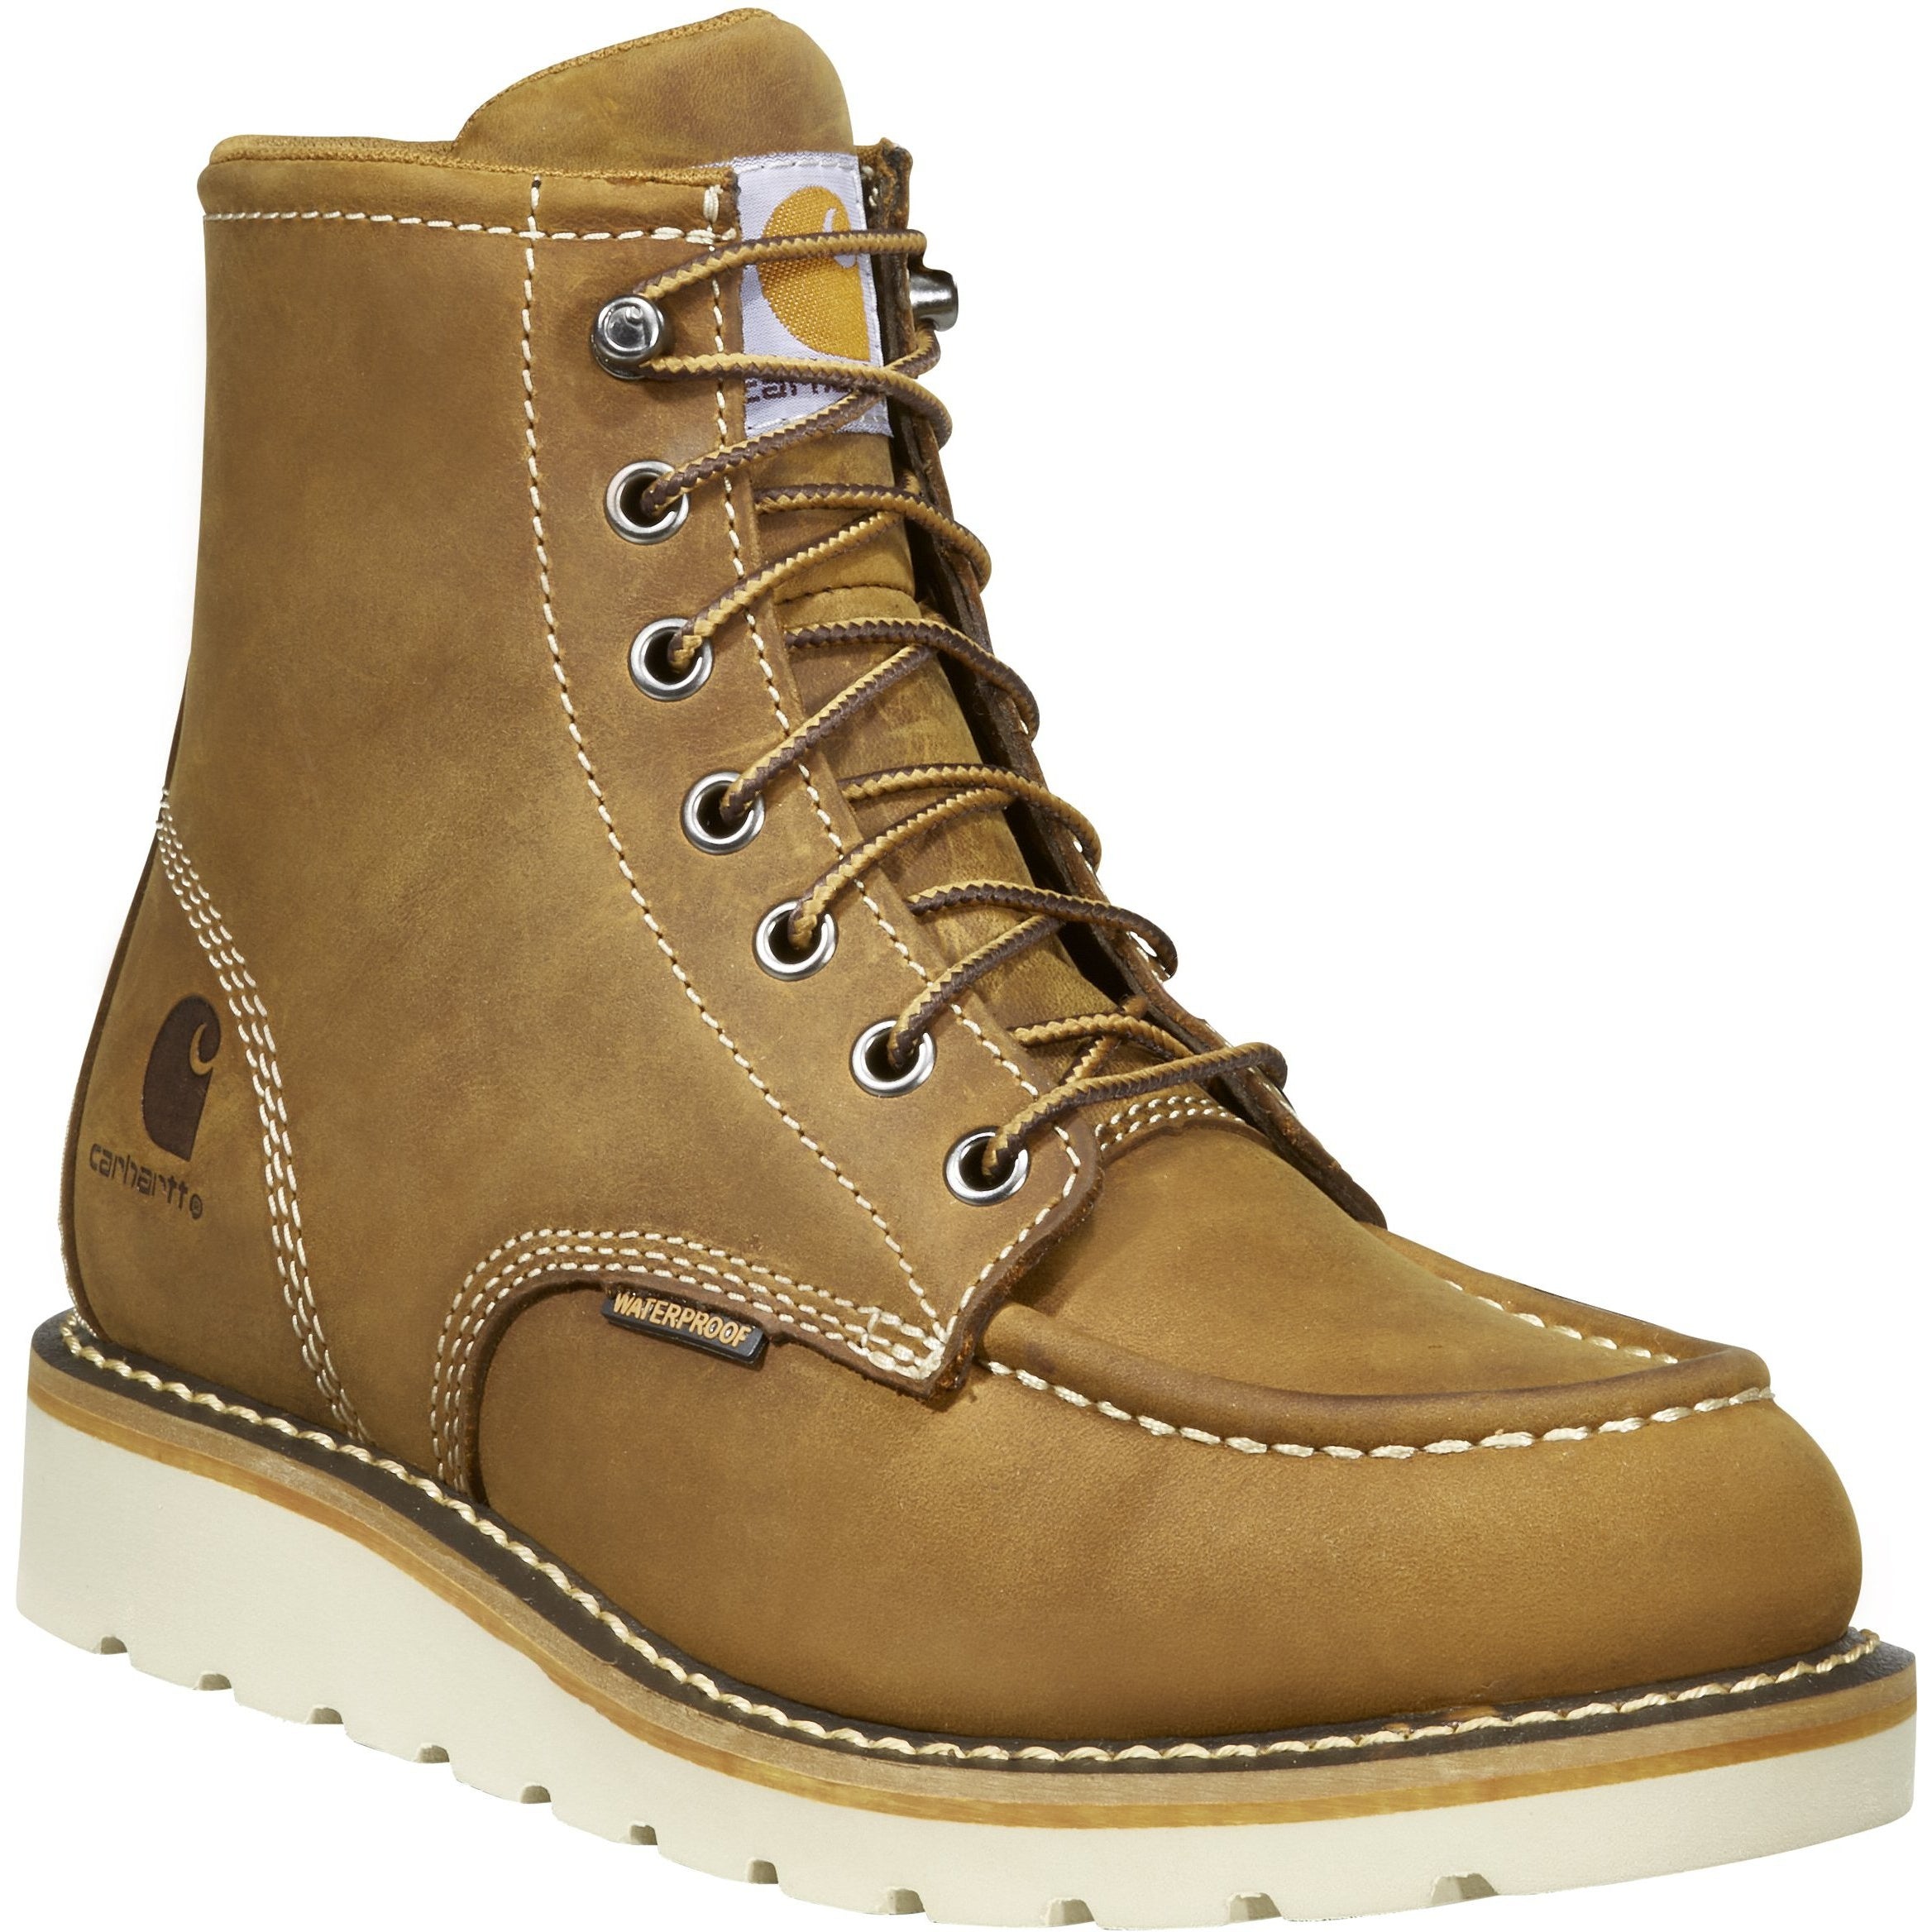 Carhartt Women's 6" Steel Toe WP Wedge Work Boot - Brown - FW6225-W 6 / Medium / Brown - Overlook Boots